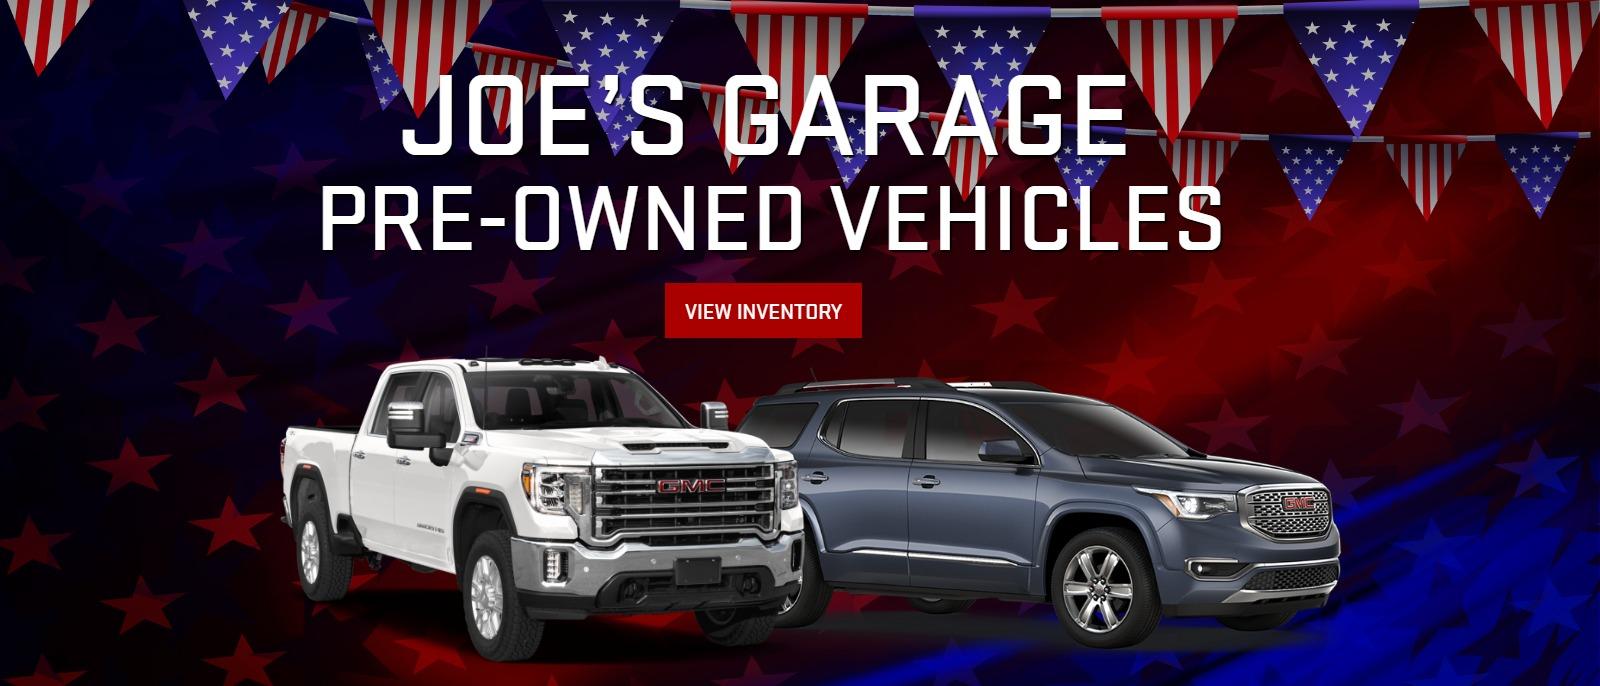 Joe’s Garage Pre-Owned Vehicles